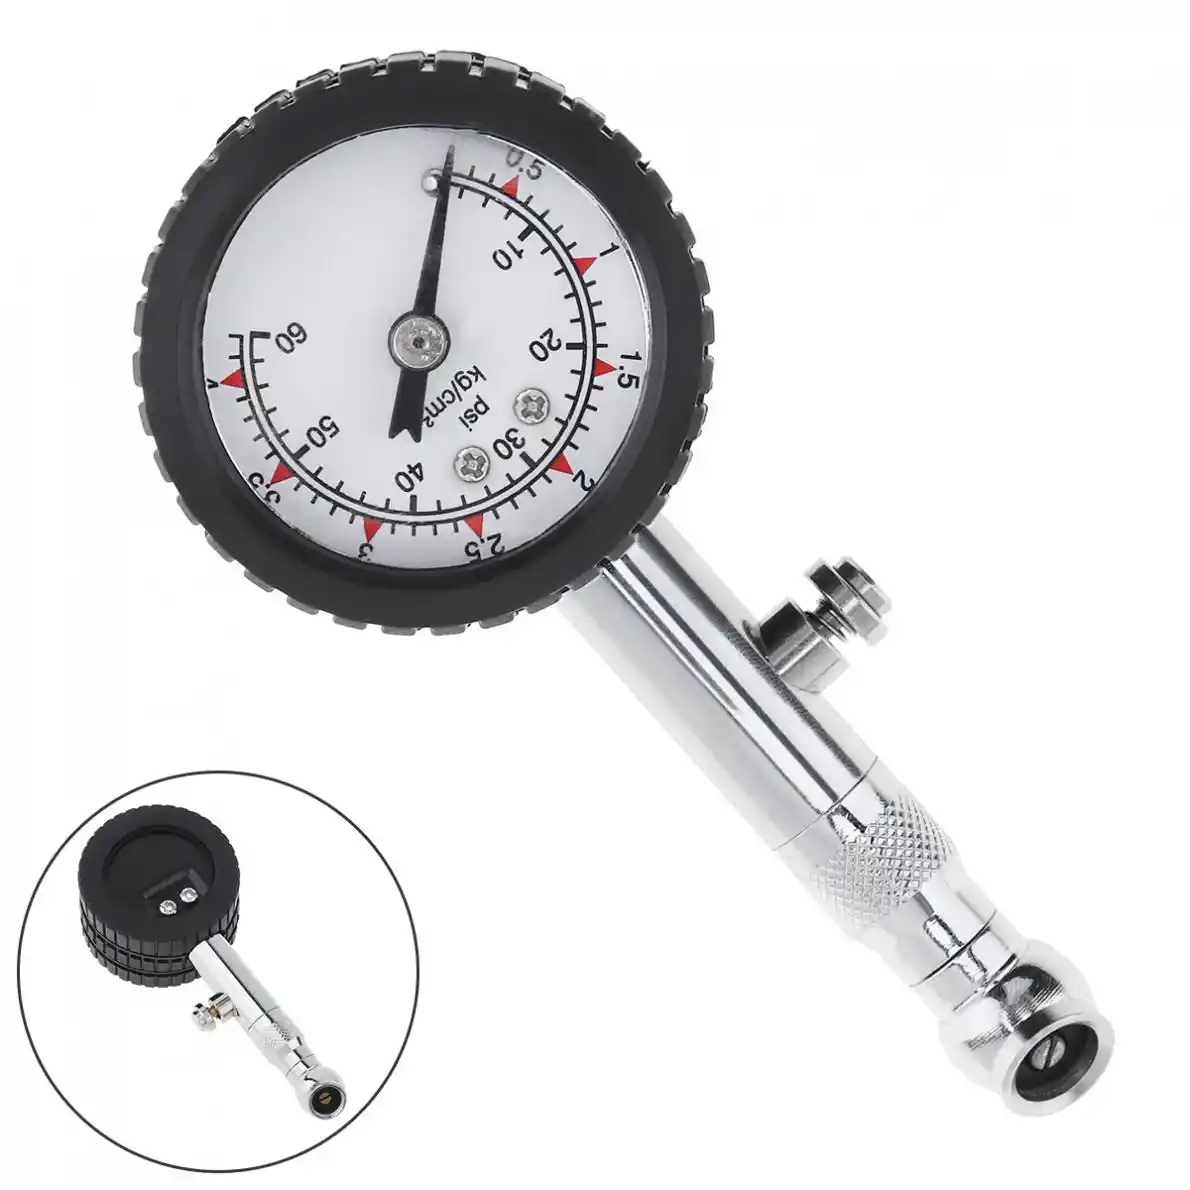 Car Vehicle Motorcycle Dial Tire Gauge Meter Pressure Tyre Measurement Too.AU